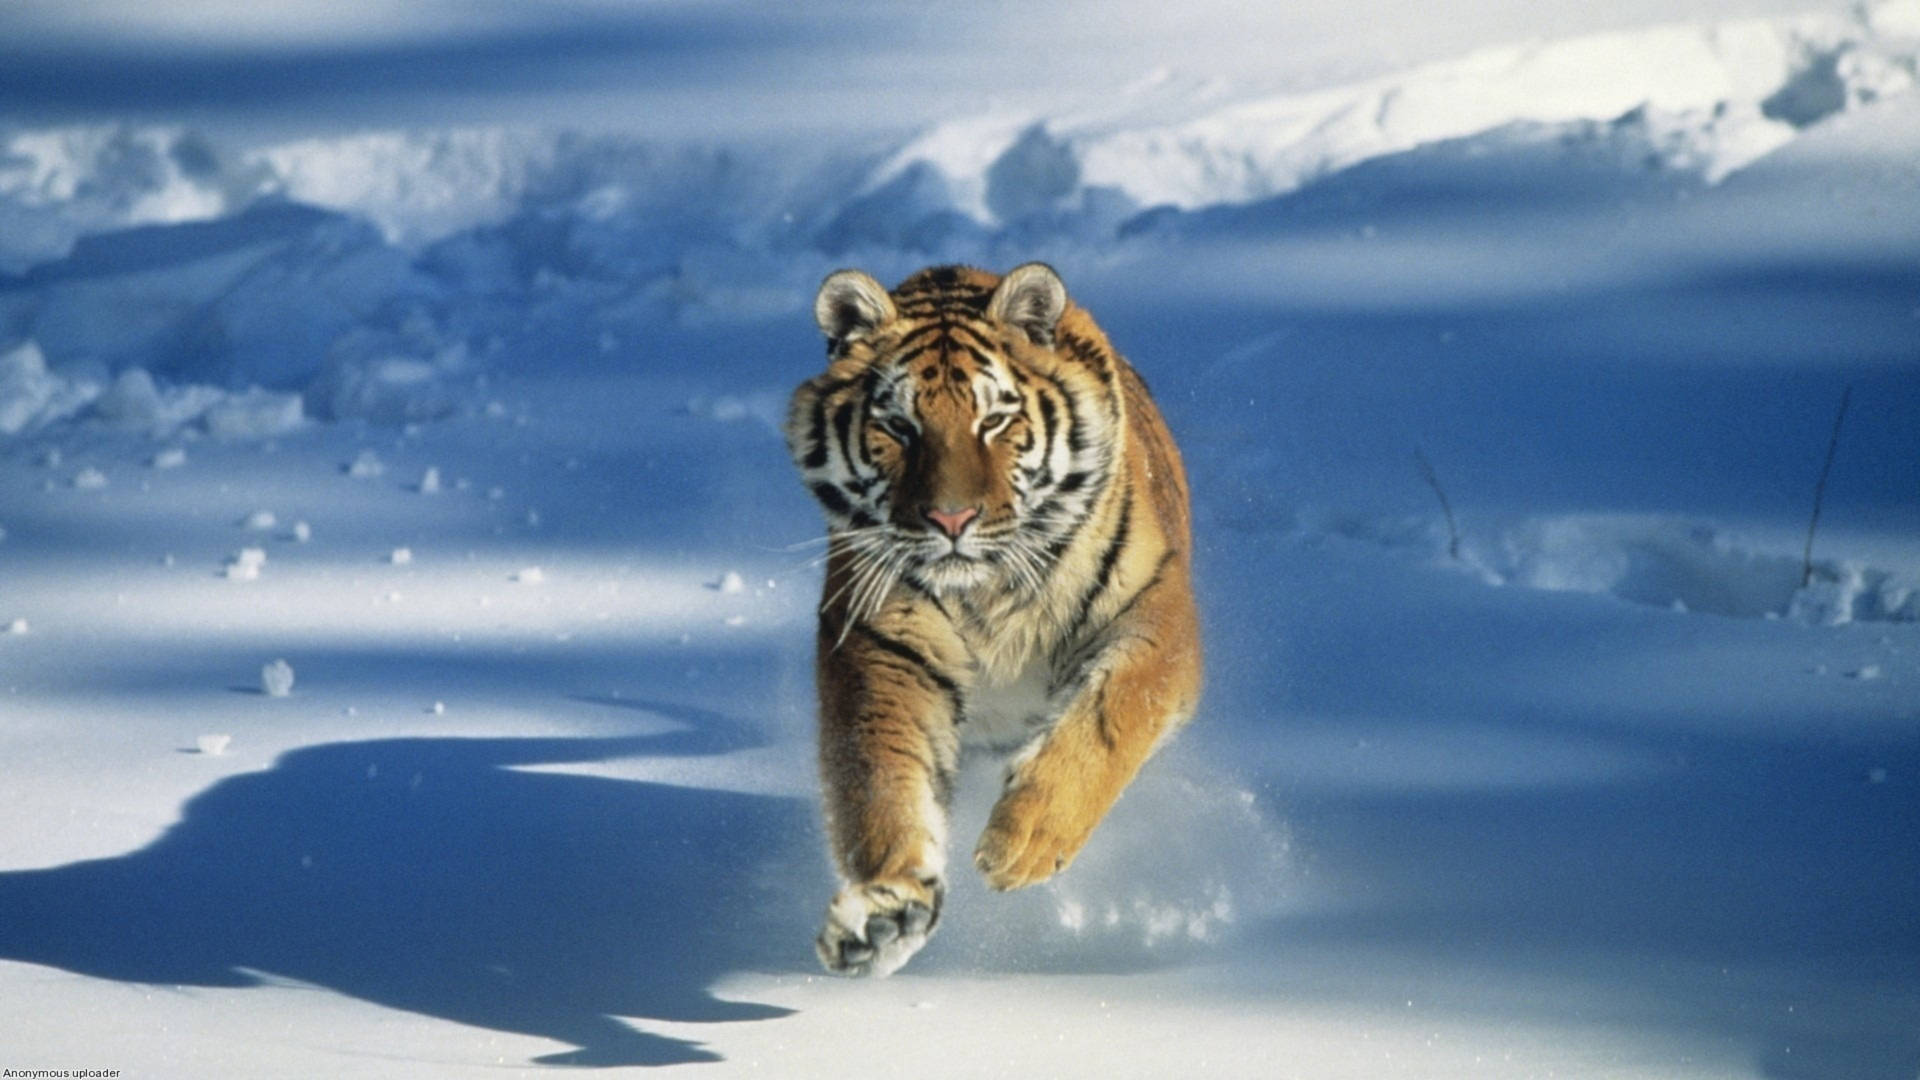 Tiger Running In Snow